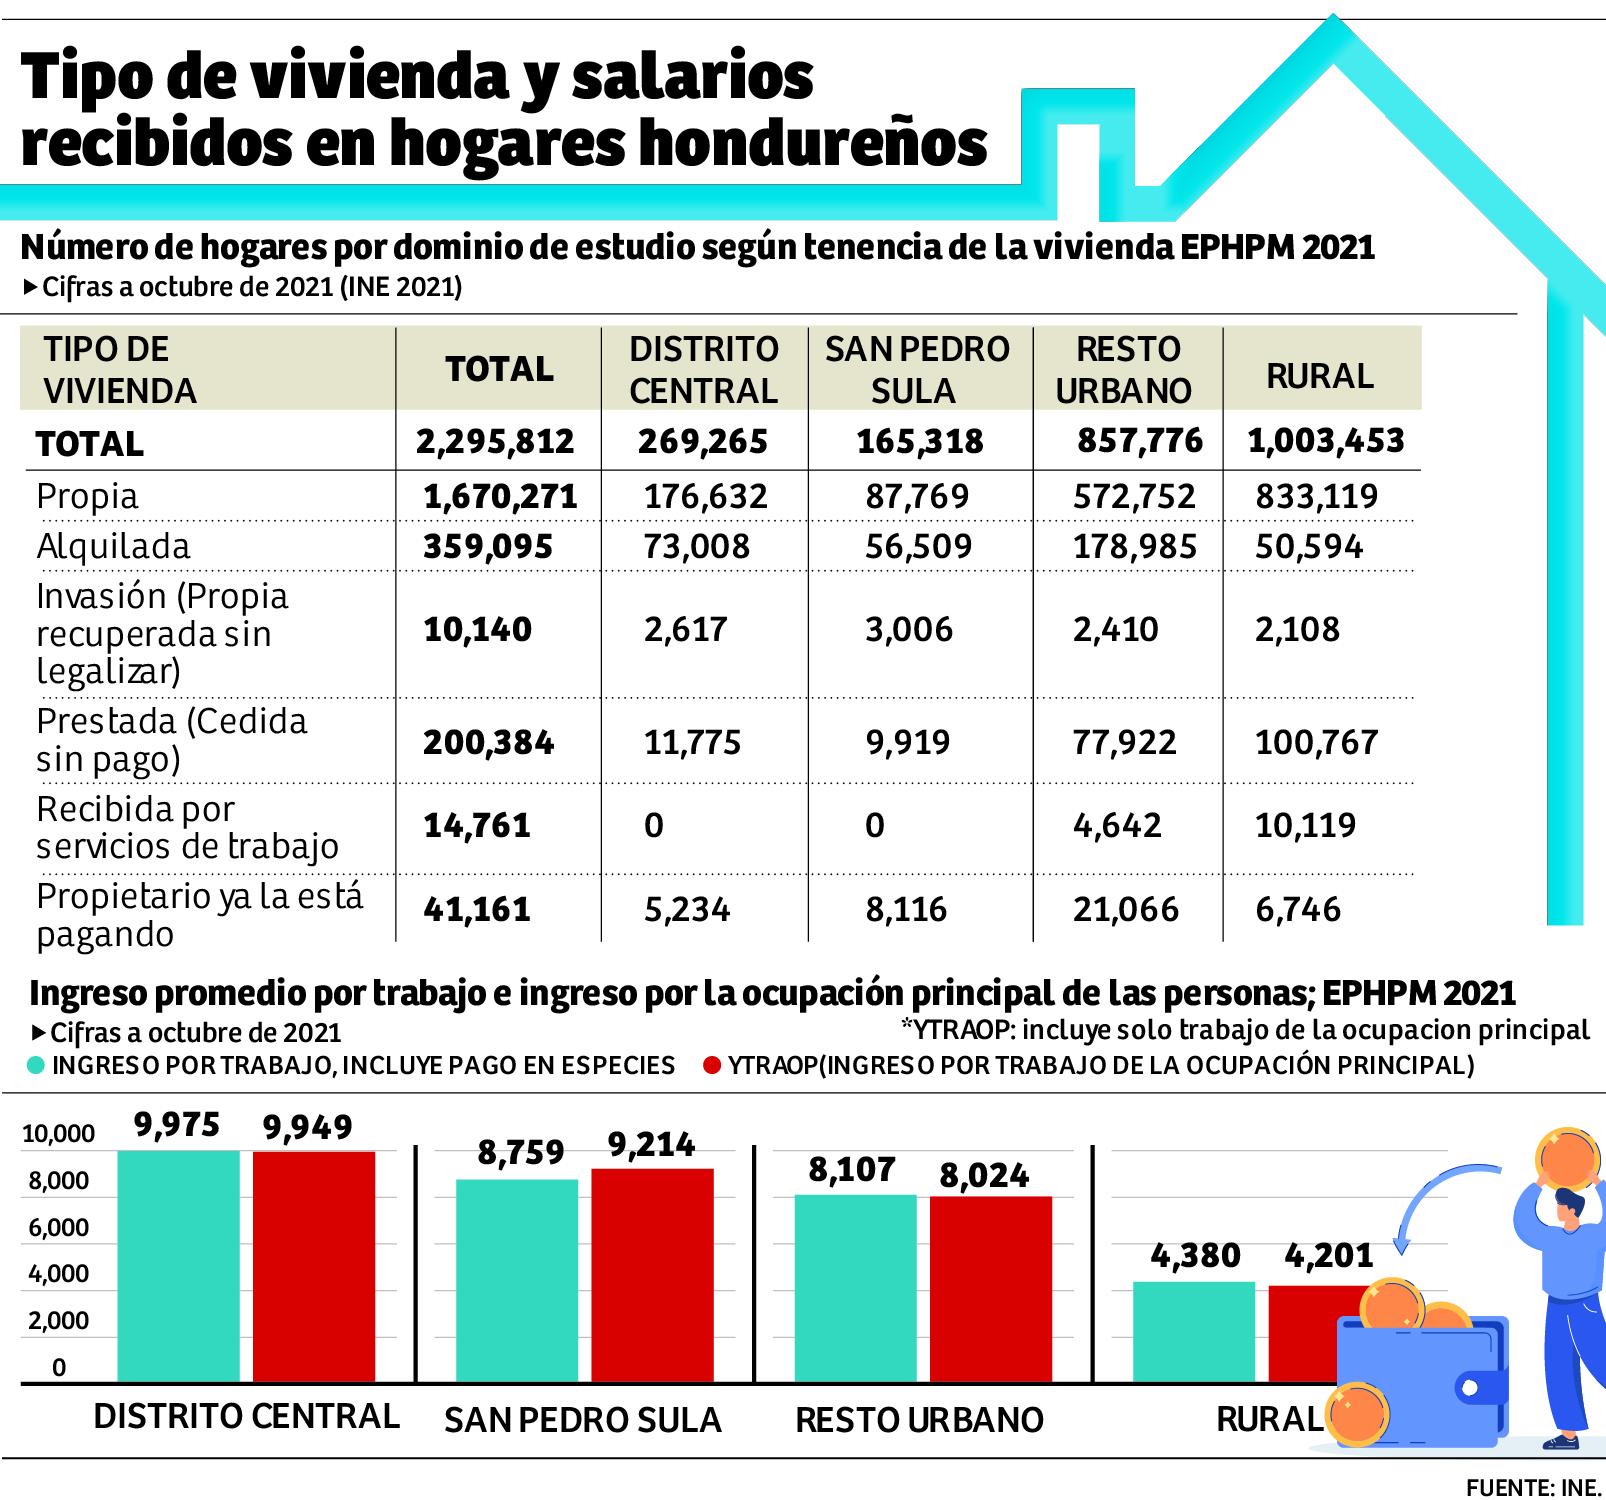 Más de 350,000 hogares hondureños alquilan casa